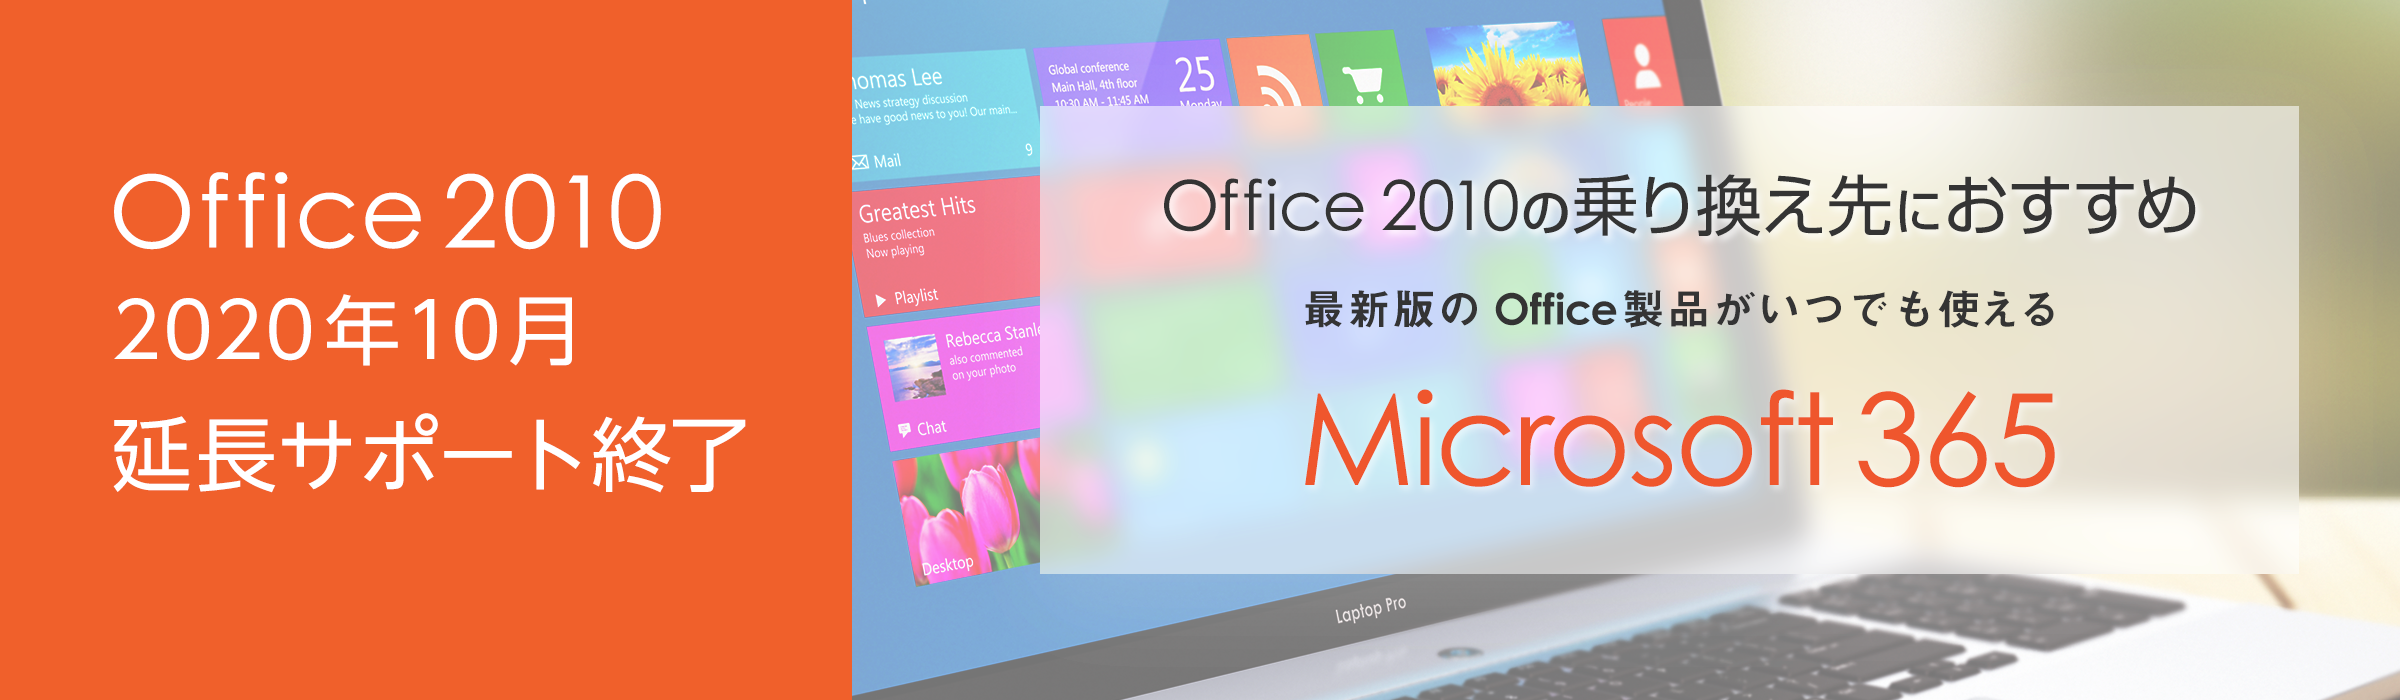 ライセンス管理楽々 最新版のOffice製品がいつでも使える法人向け「Microsoft 365」